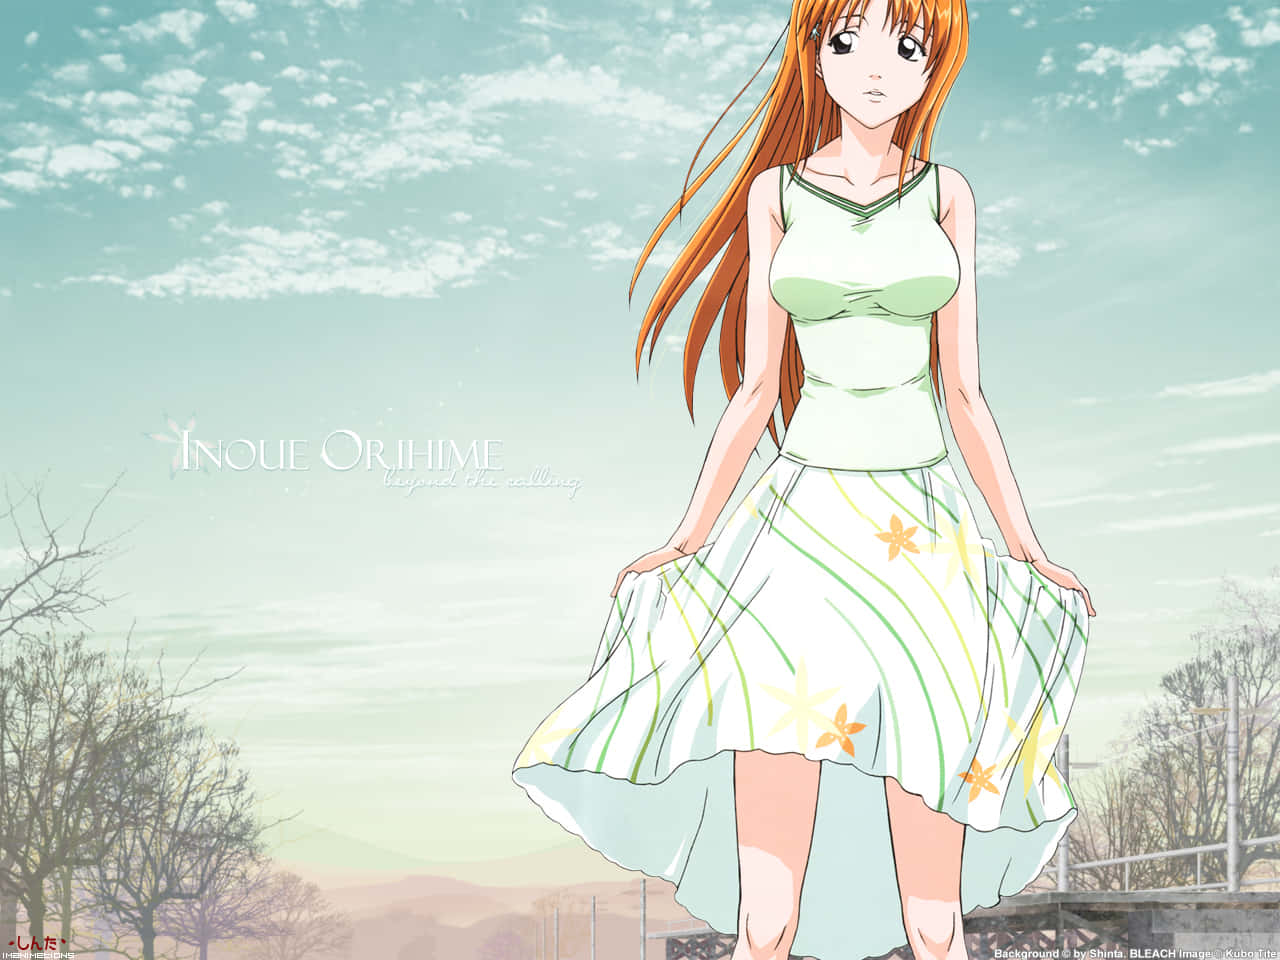 Meet Orihime Inoue, the Japanese manga and anime character Wallpaper